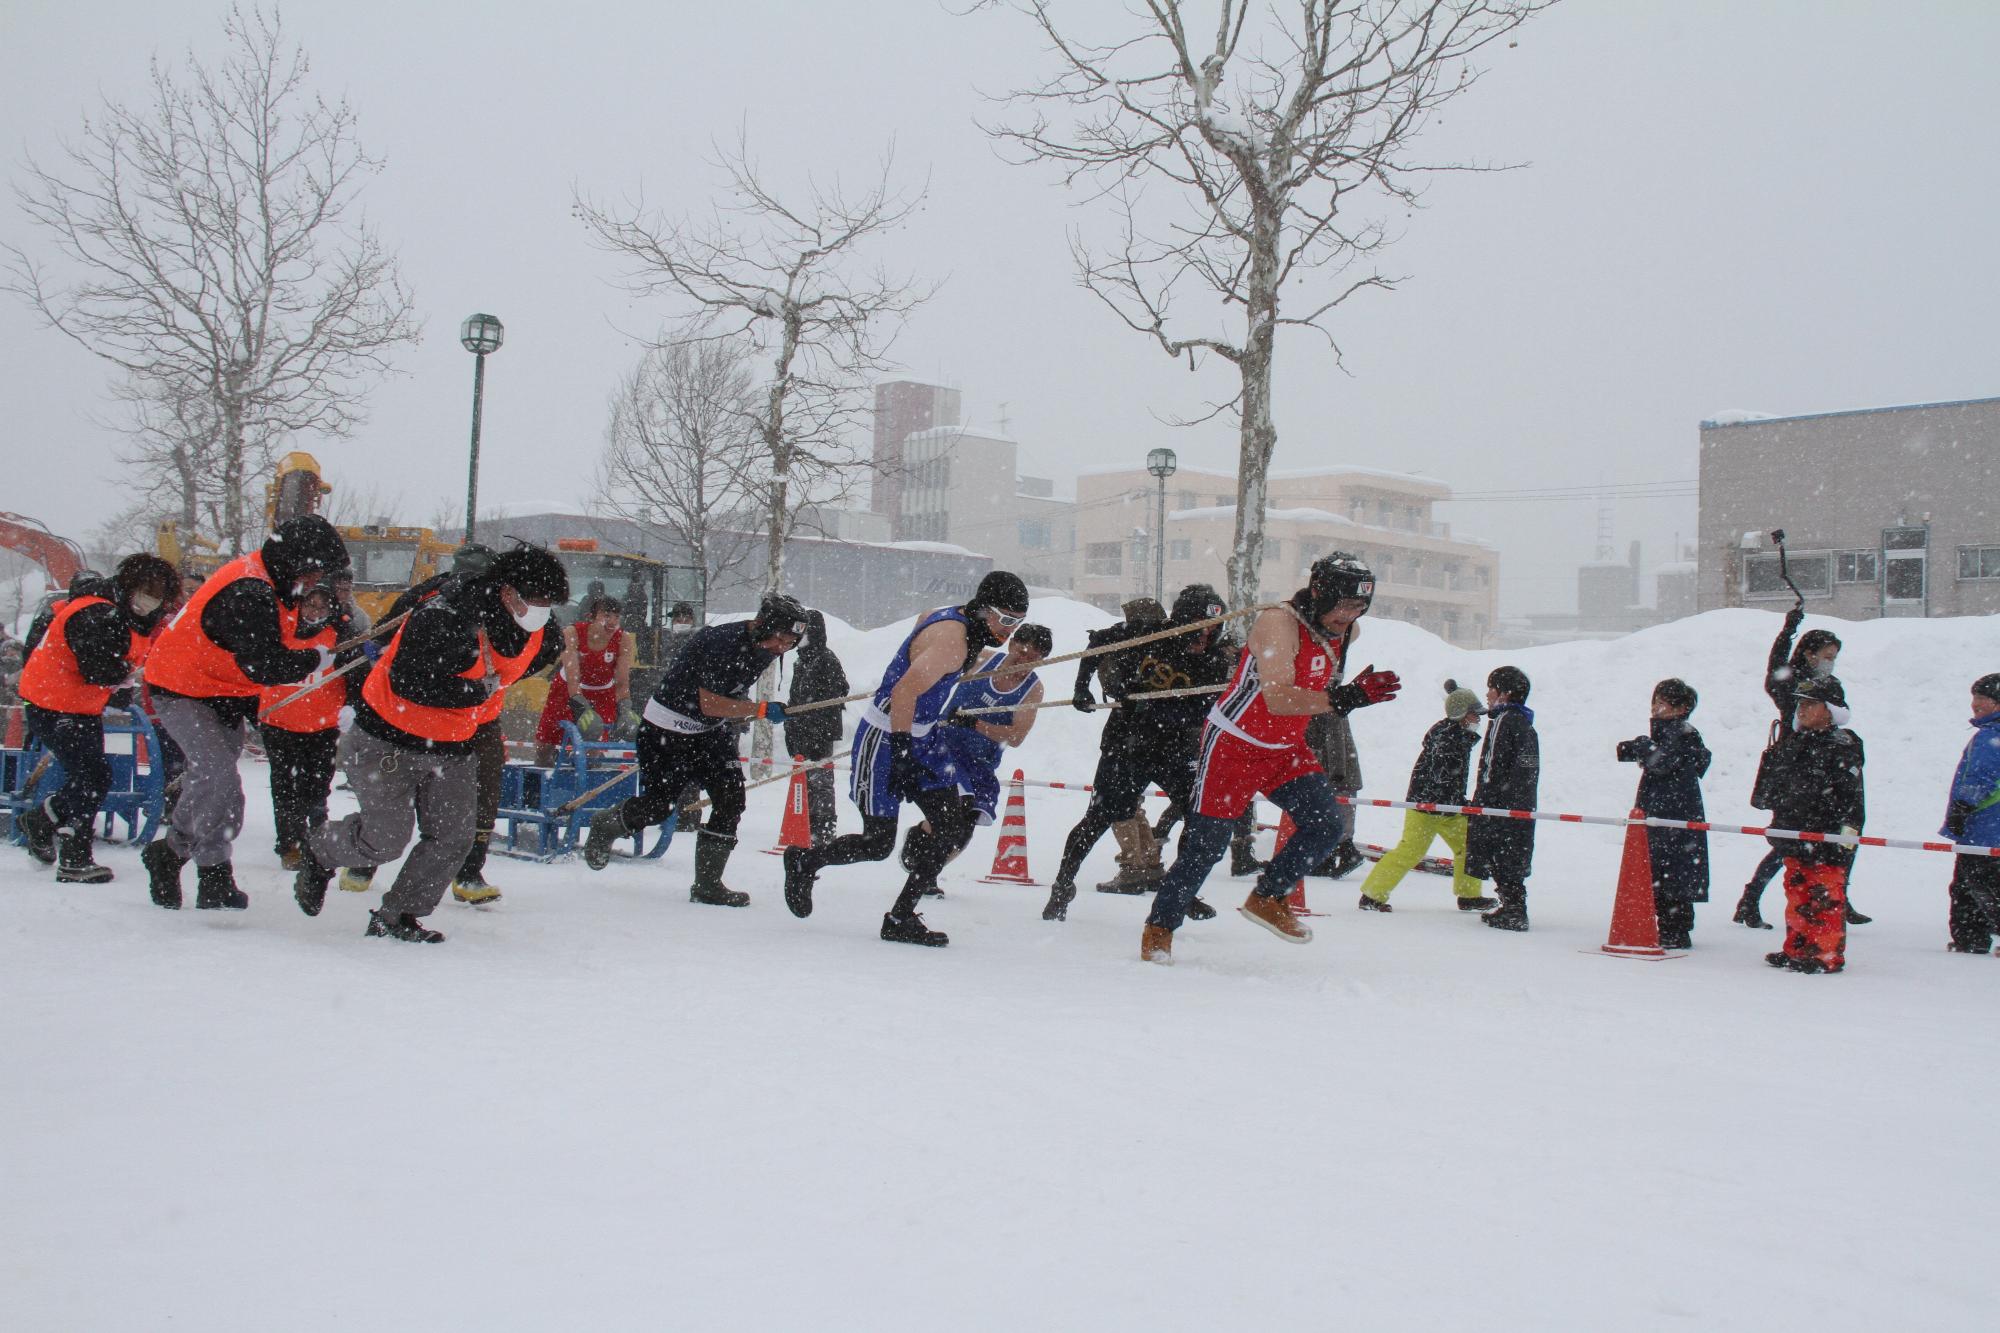 第33回いわみざわドカ雪まつりで、数人の男性がばんばのそりを引いて競争している人間ばんばの様子が写った写真